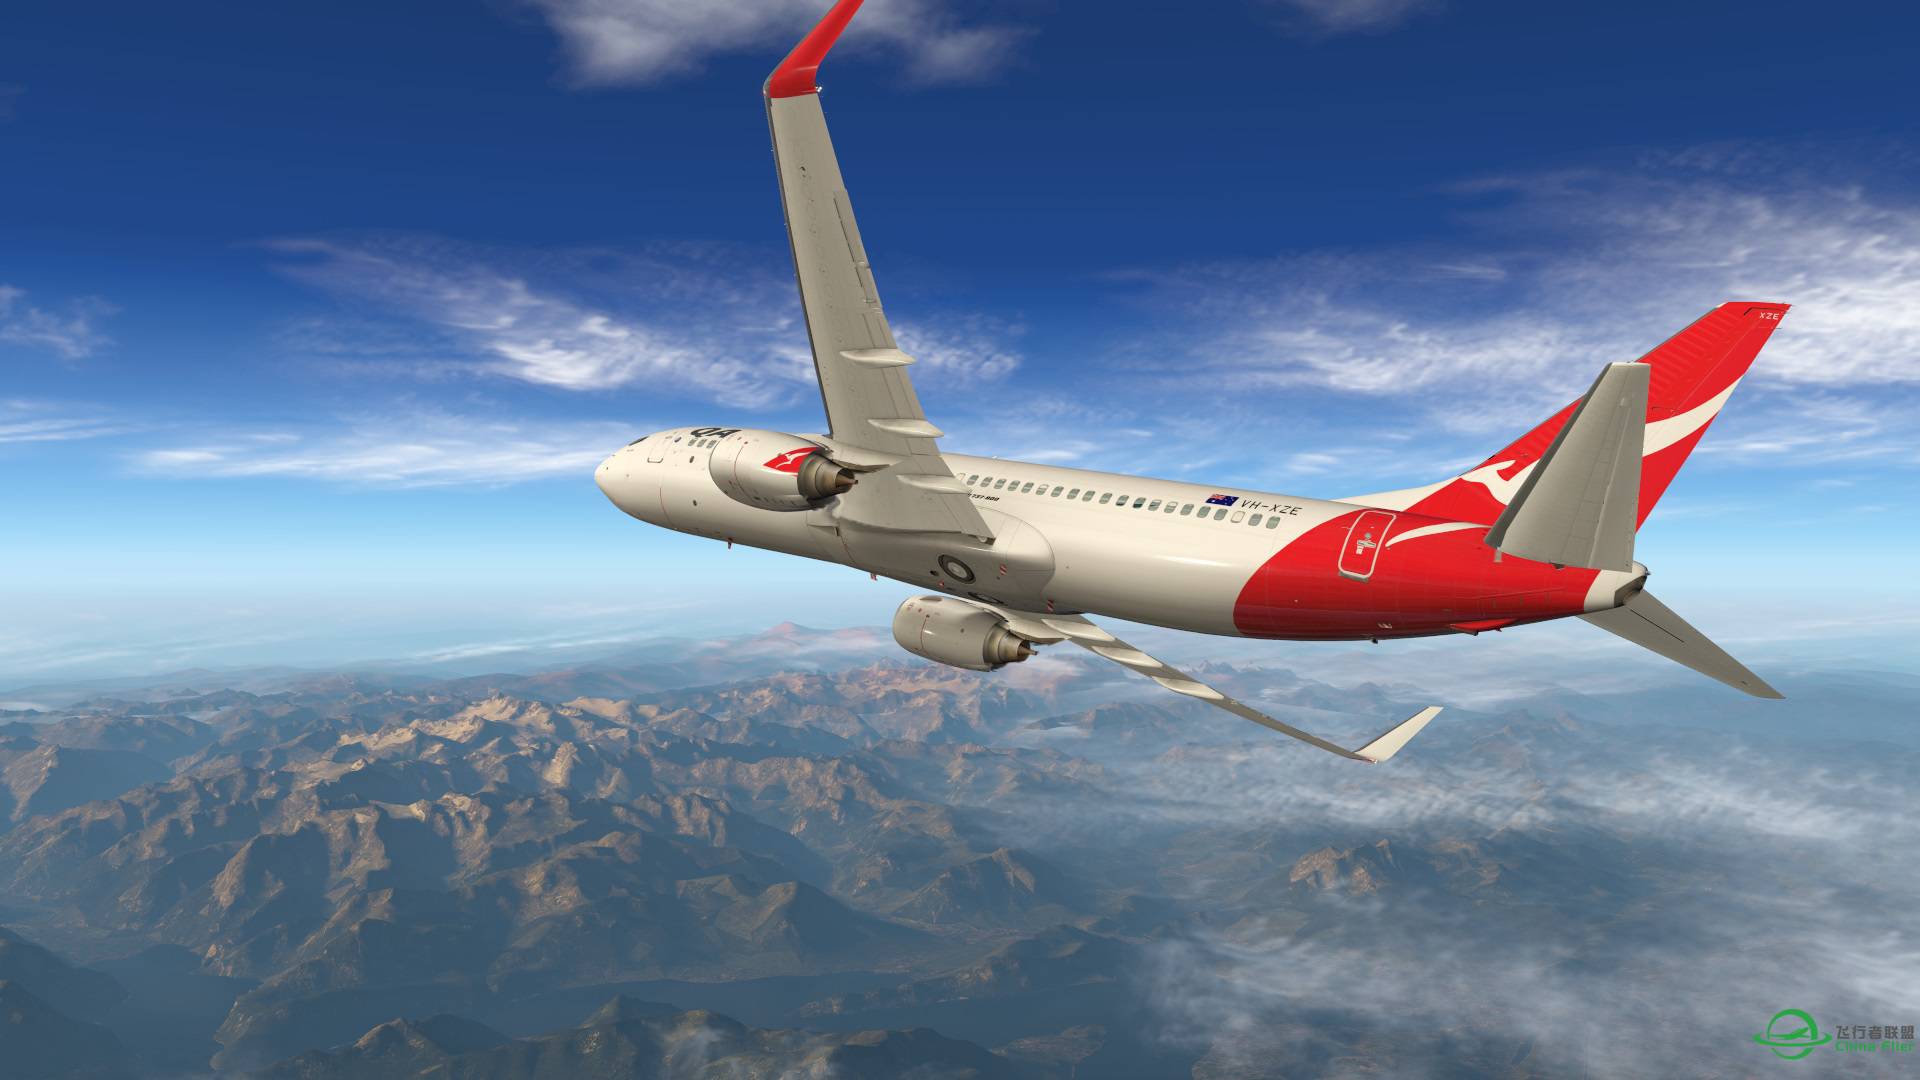 飞跃阿尔卑斯山 X-plane 11-1054 